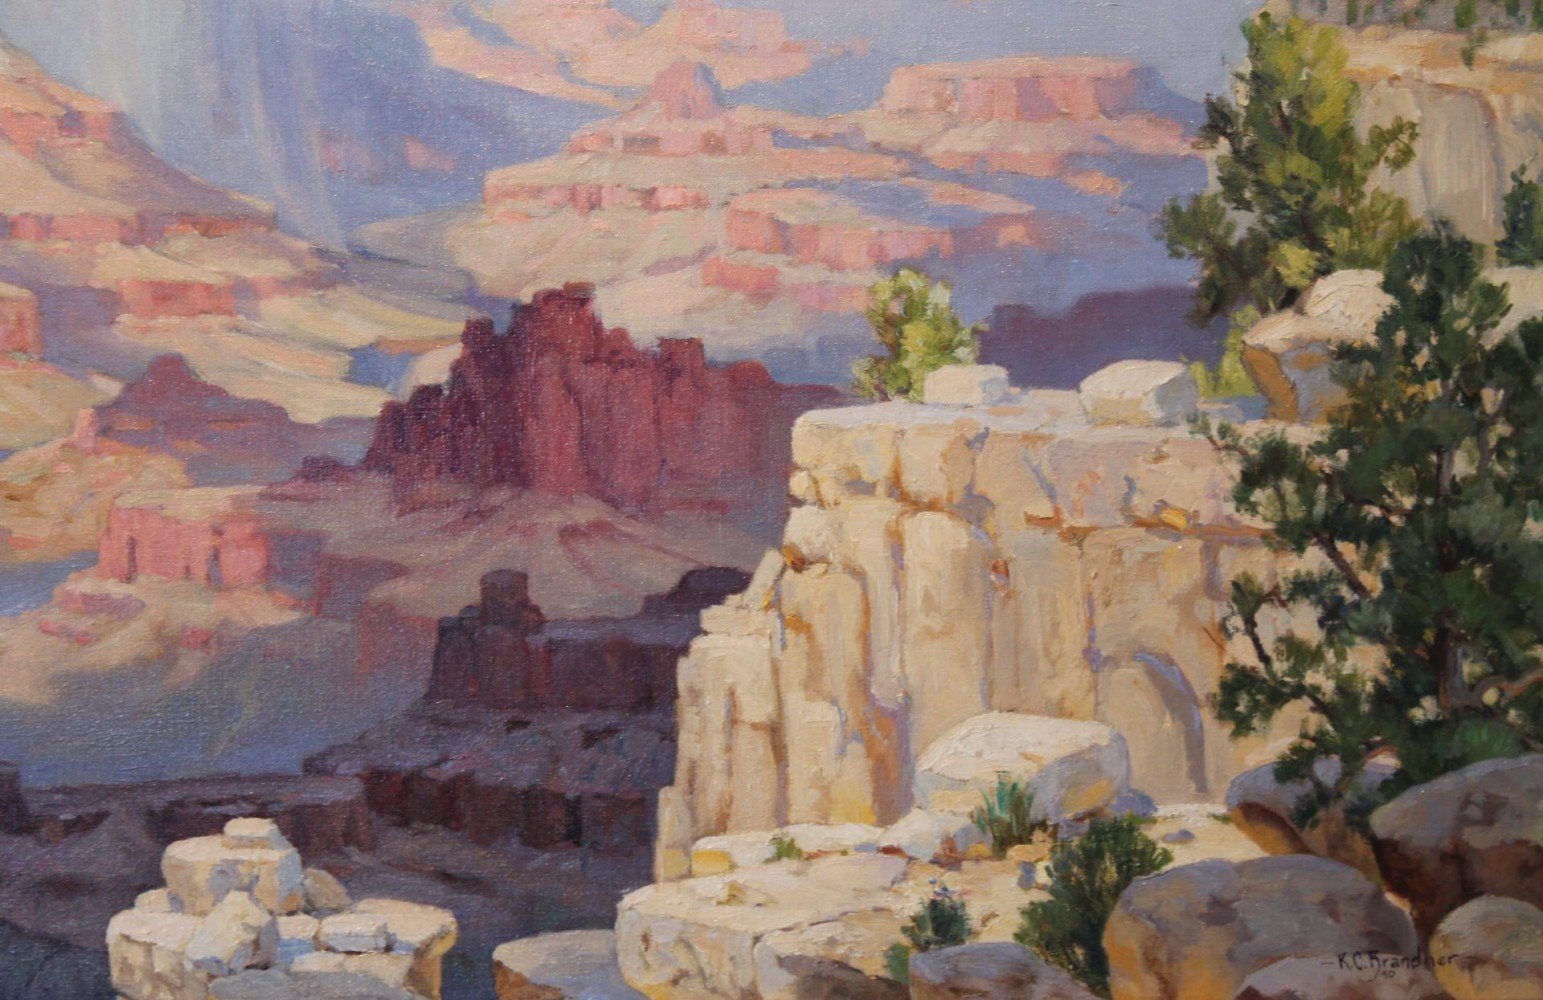 Grand Canyon by Karl C. Brandner